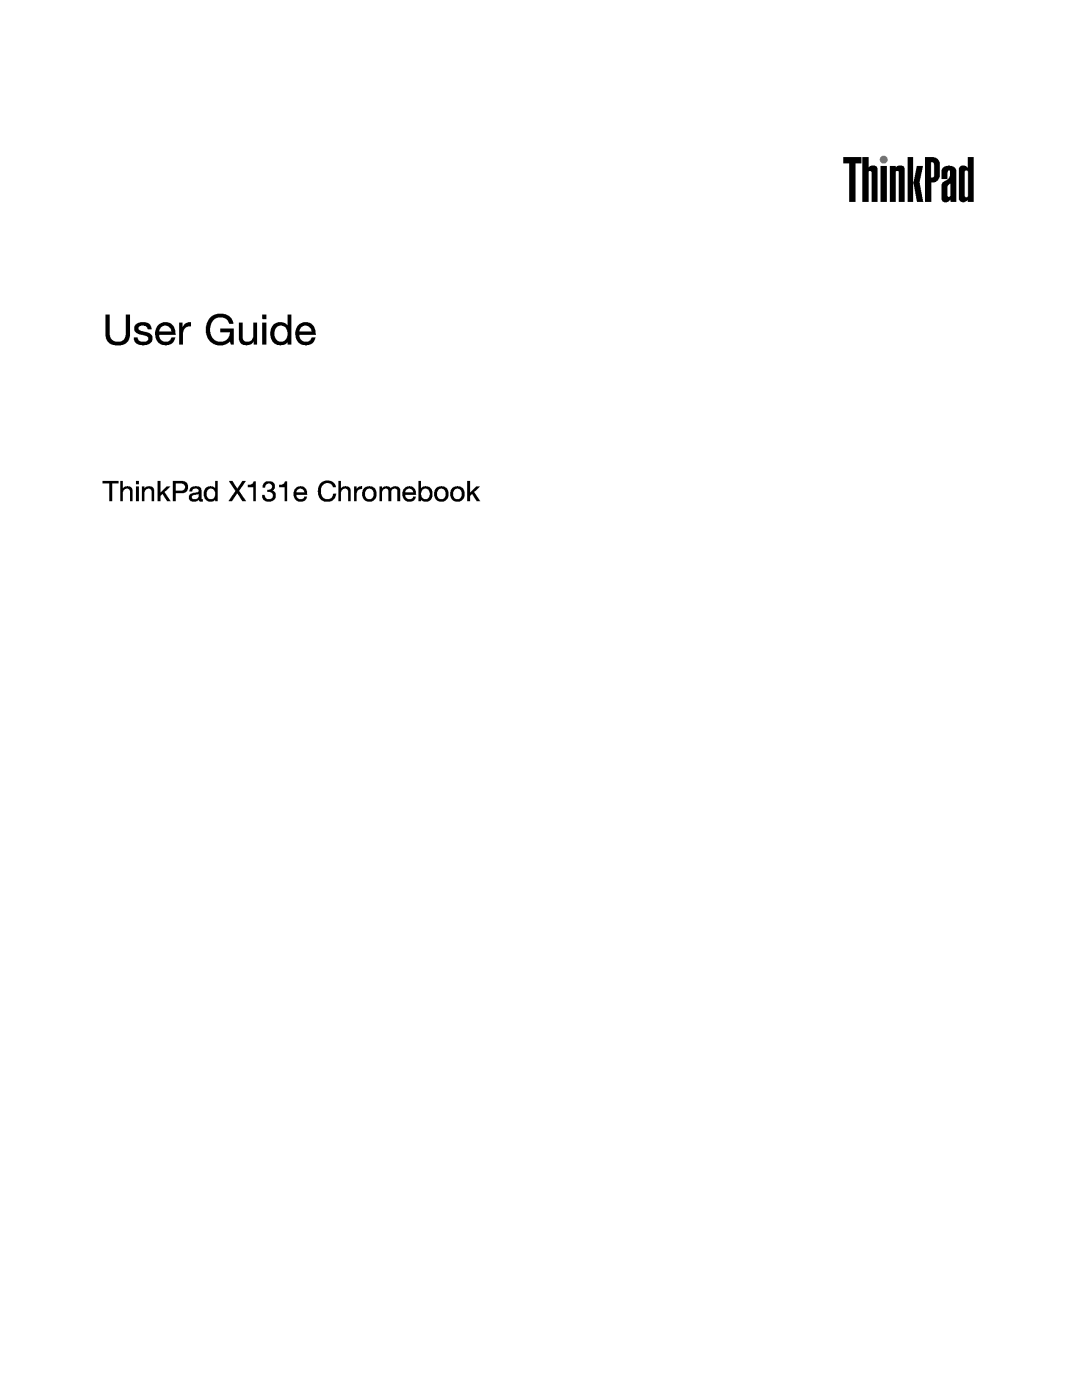 Lenovo 628323U manual User Guide, ThinkPad X131e Chromebook 